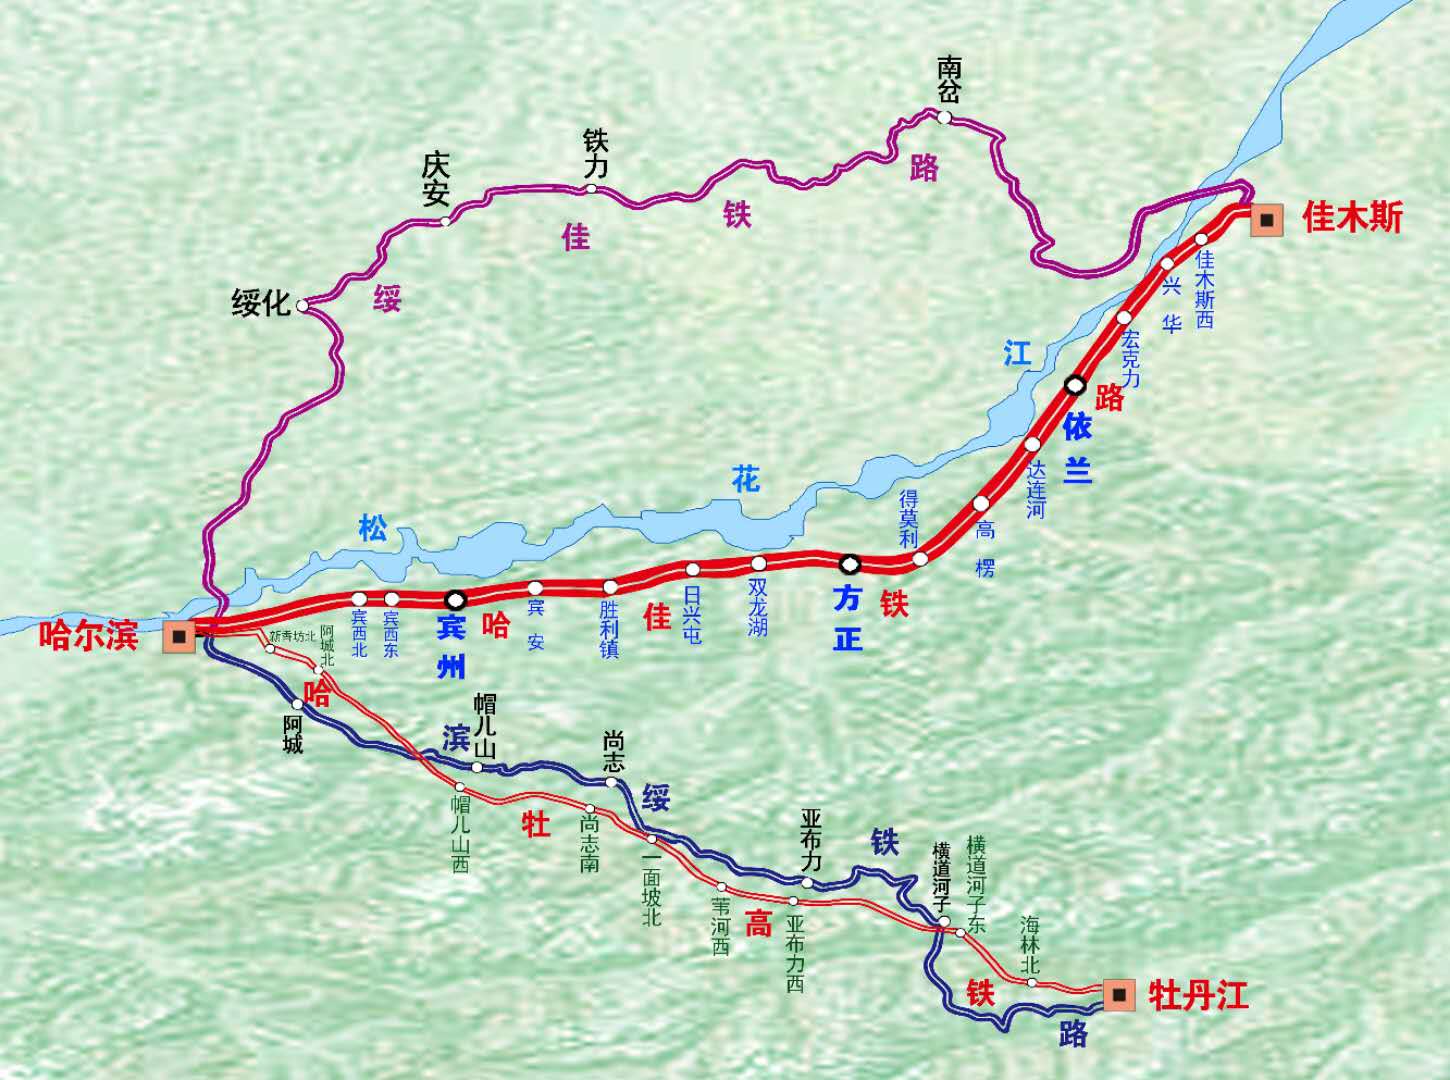 哈佳铁路开通在即 跟着东北网感受龙江速度